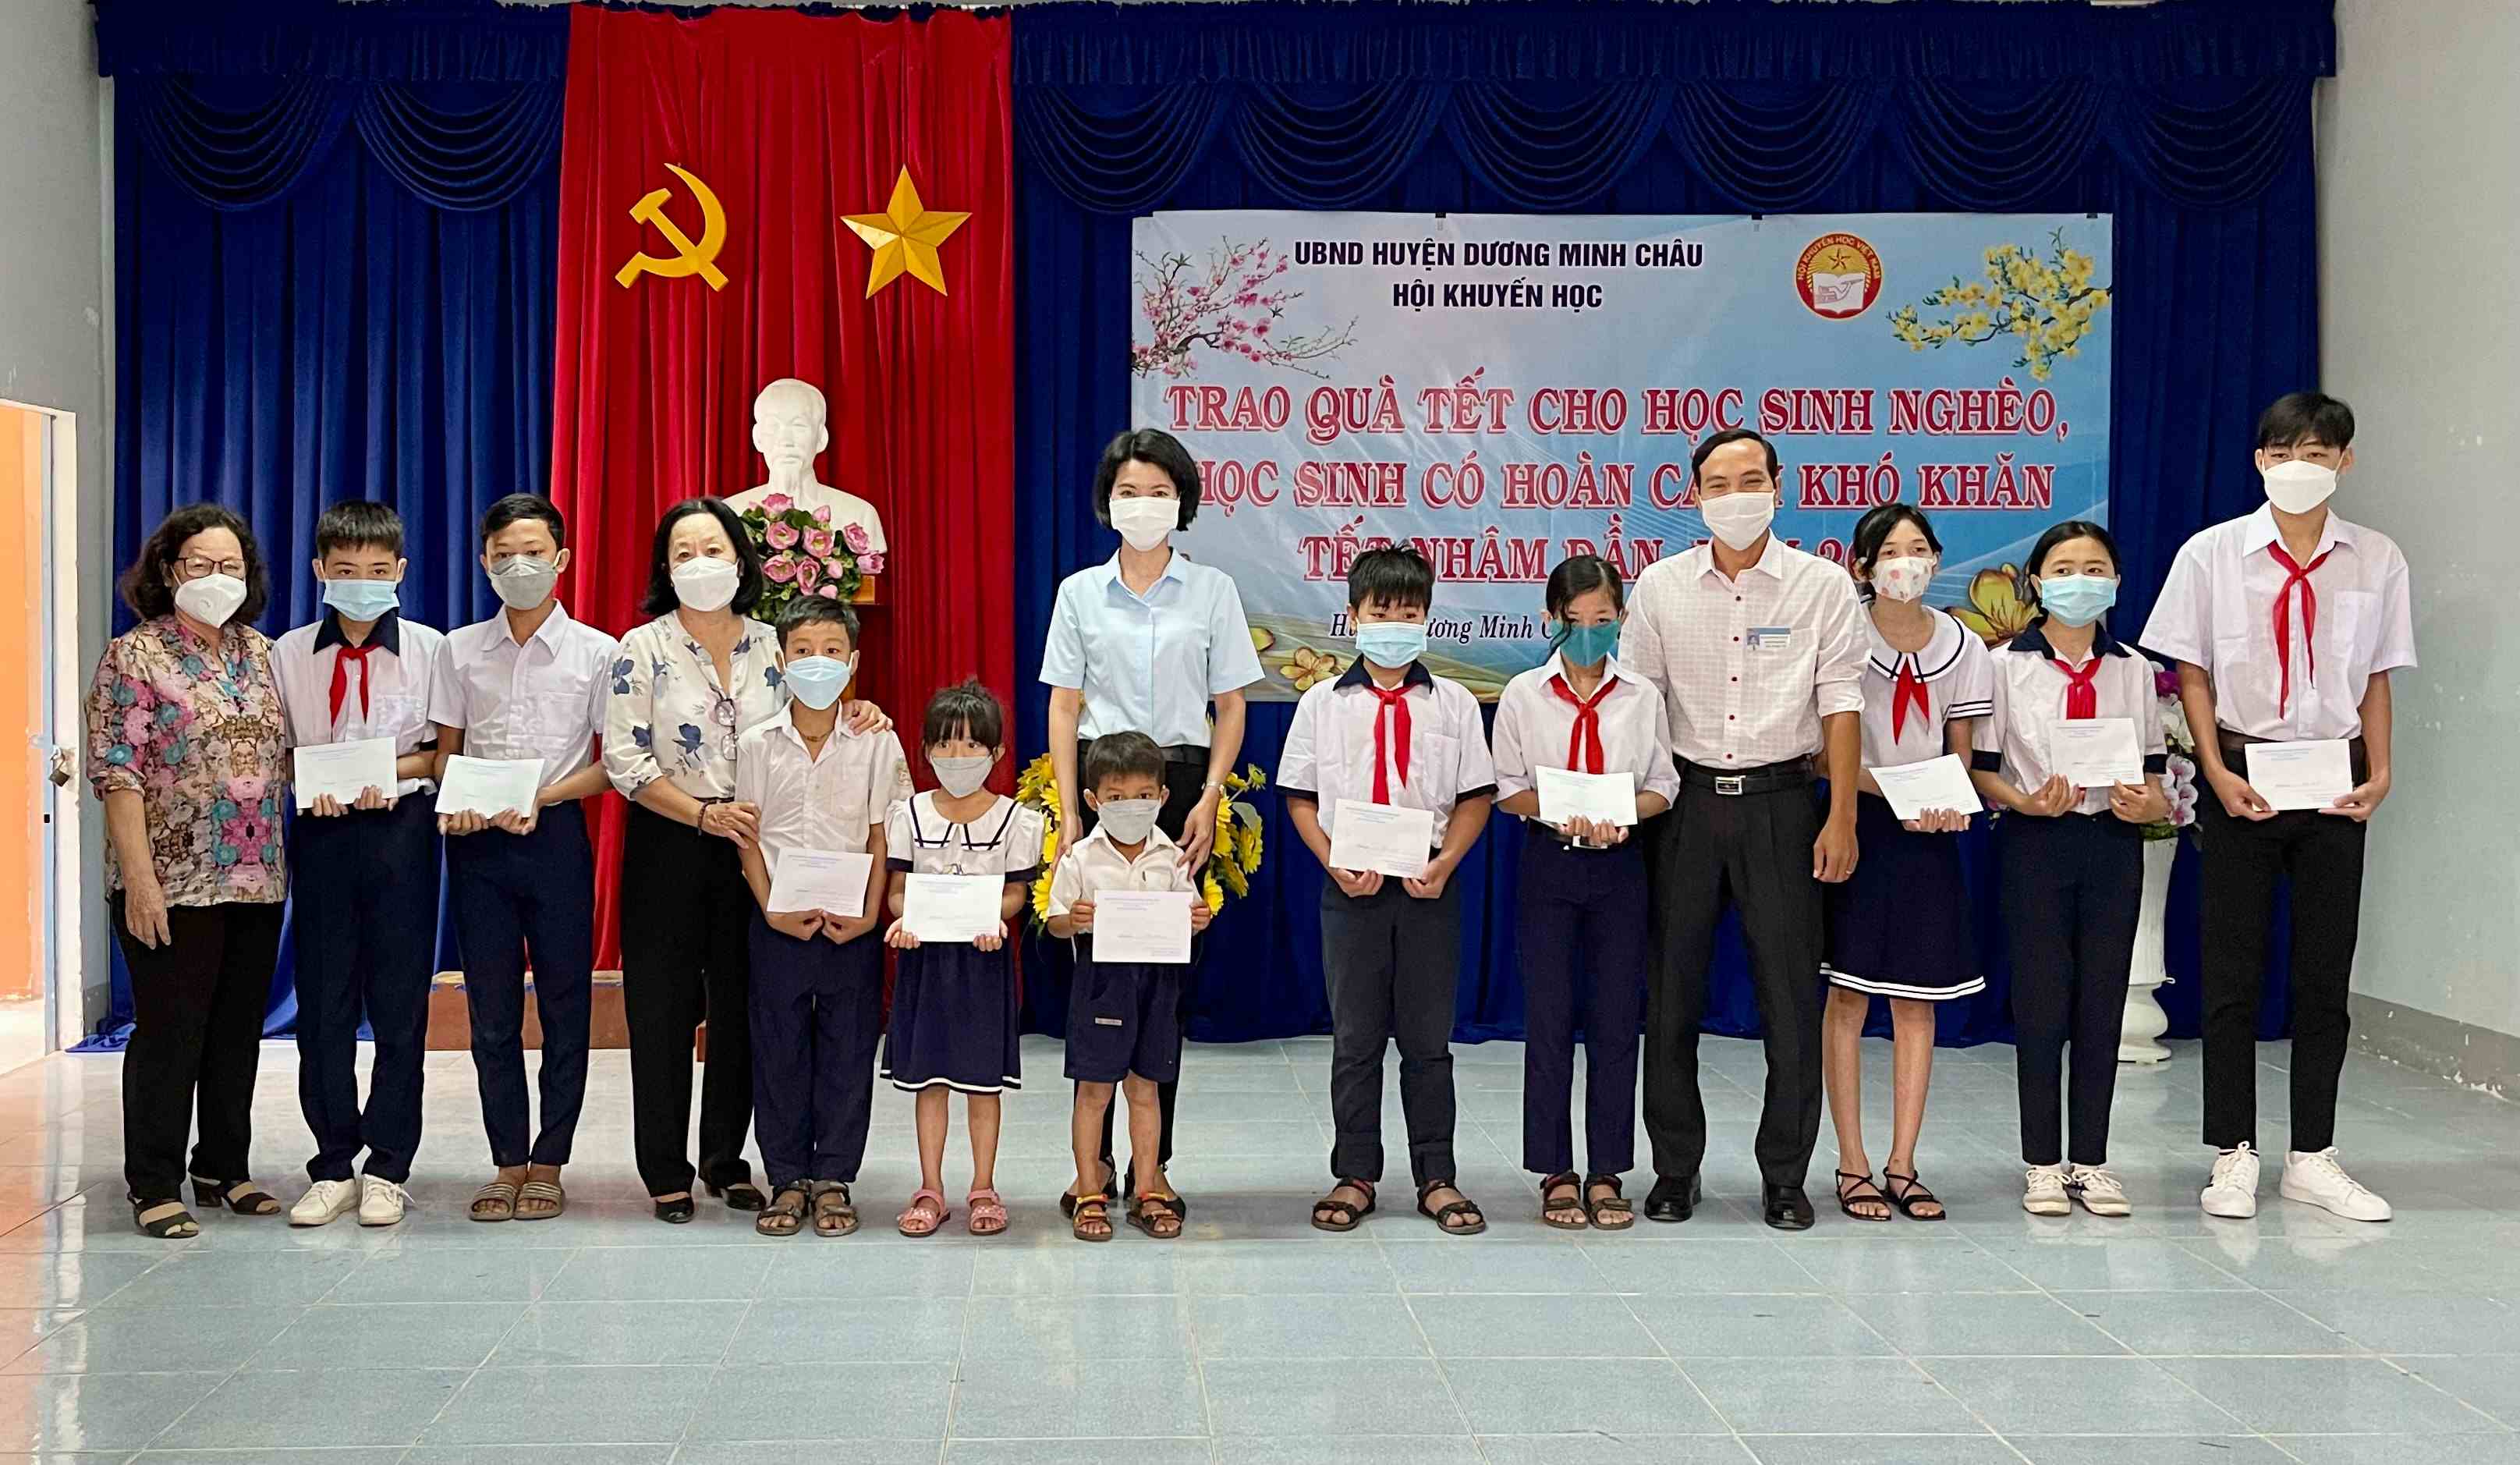 Hội Khuyến học Huyện Dương Minh Châu tổ chức trao quà tết cho các em học sinh nghèo, khó khăn tết Nhâm Dần năm 2022